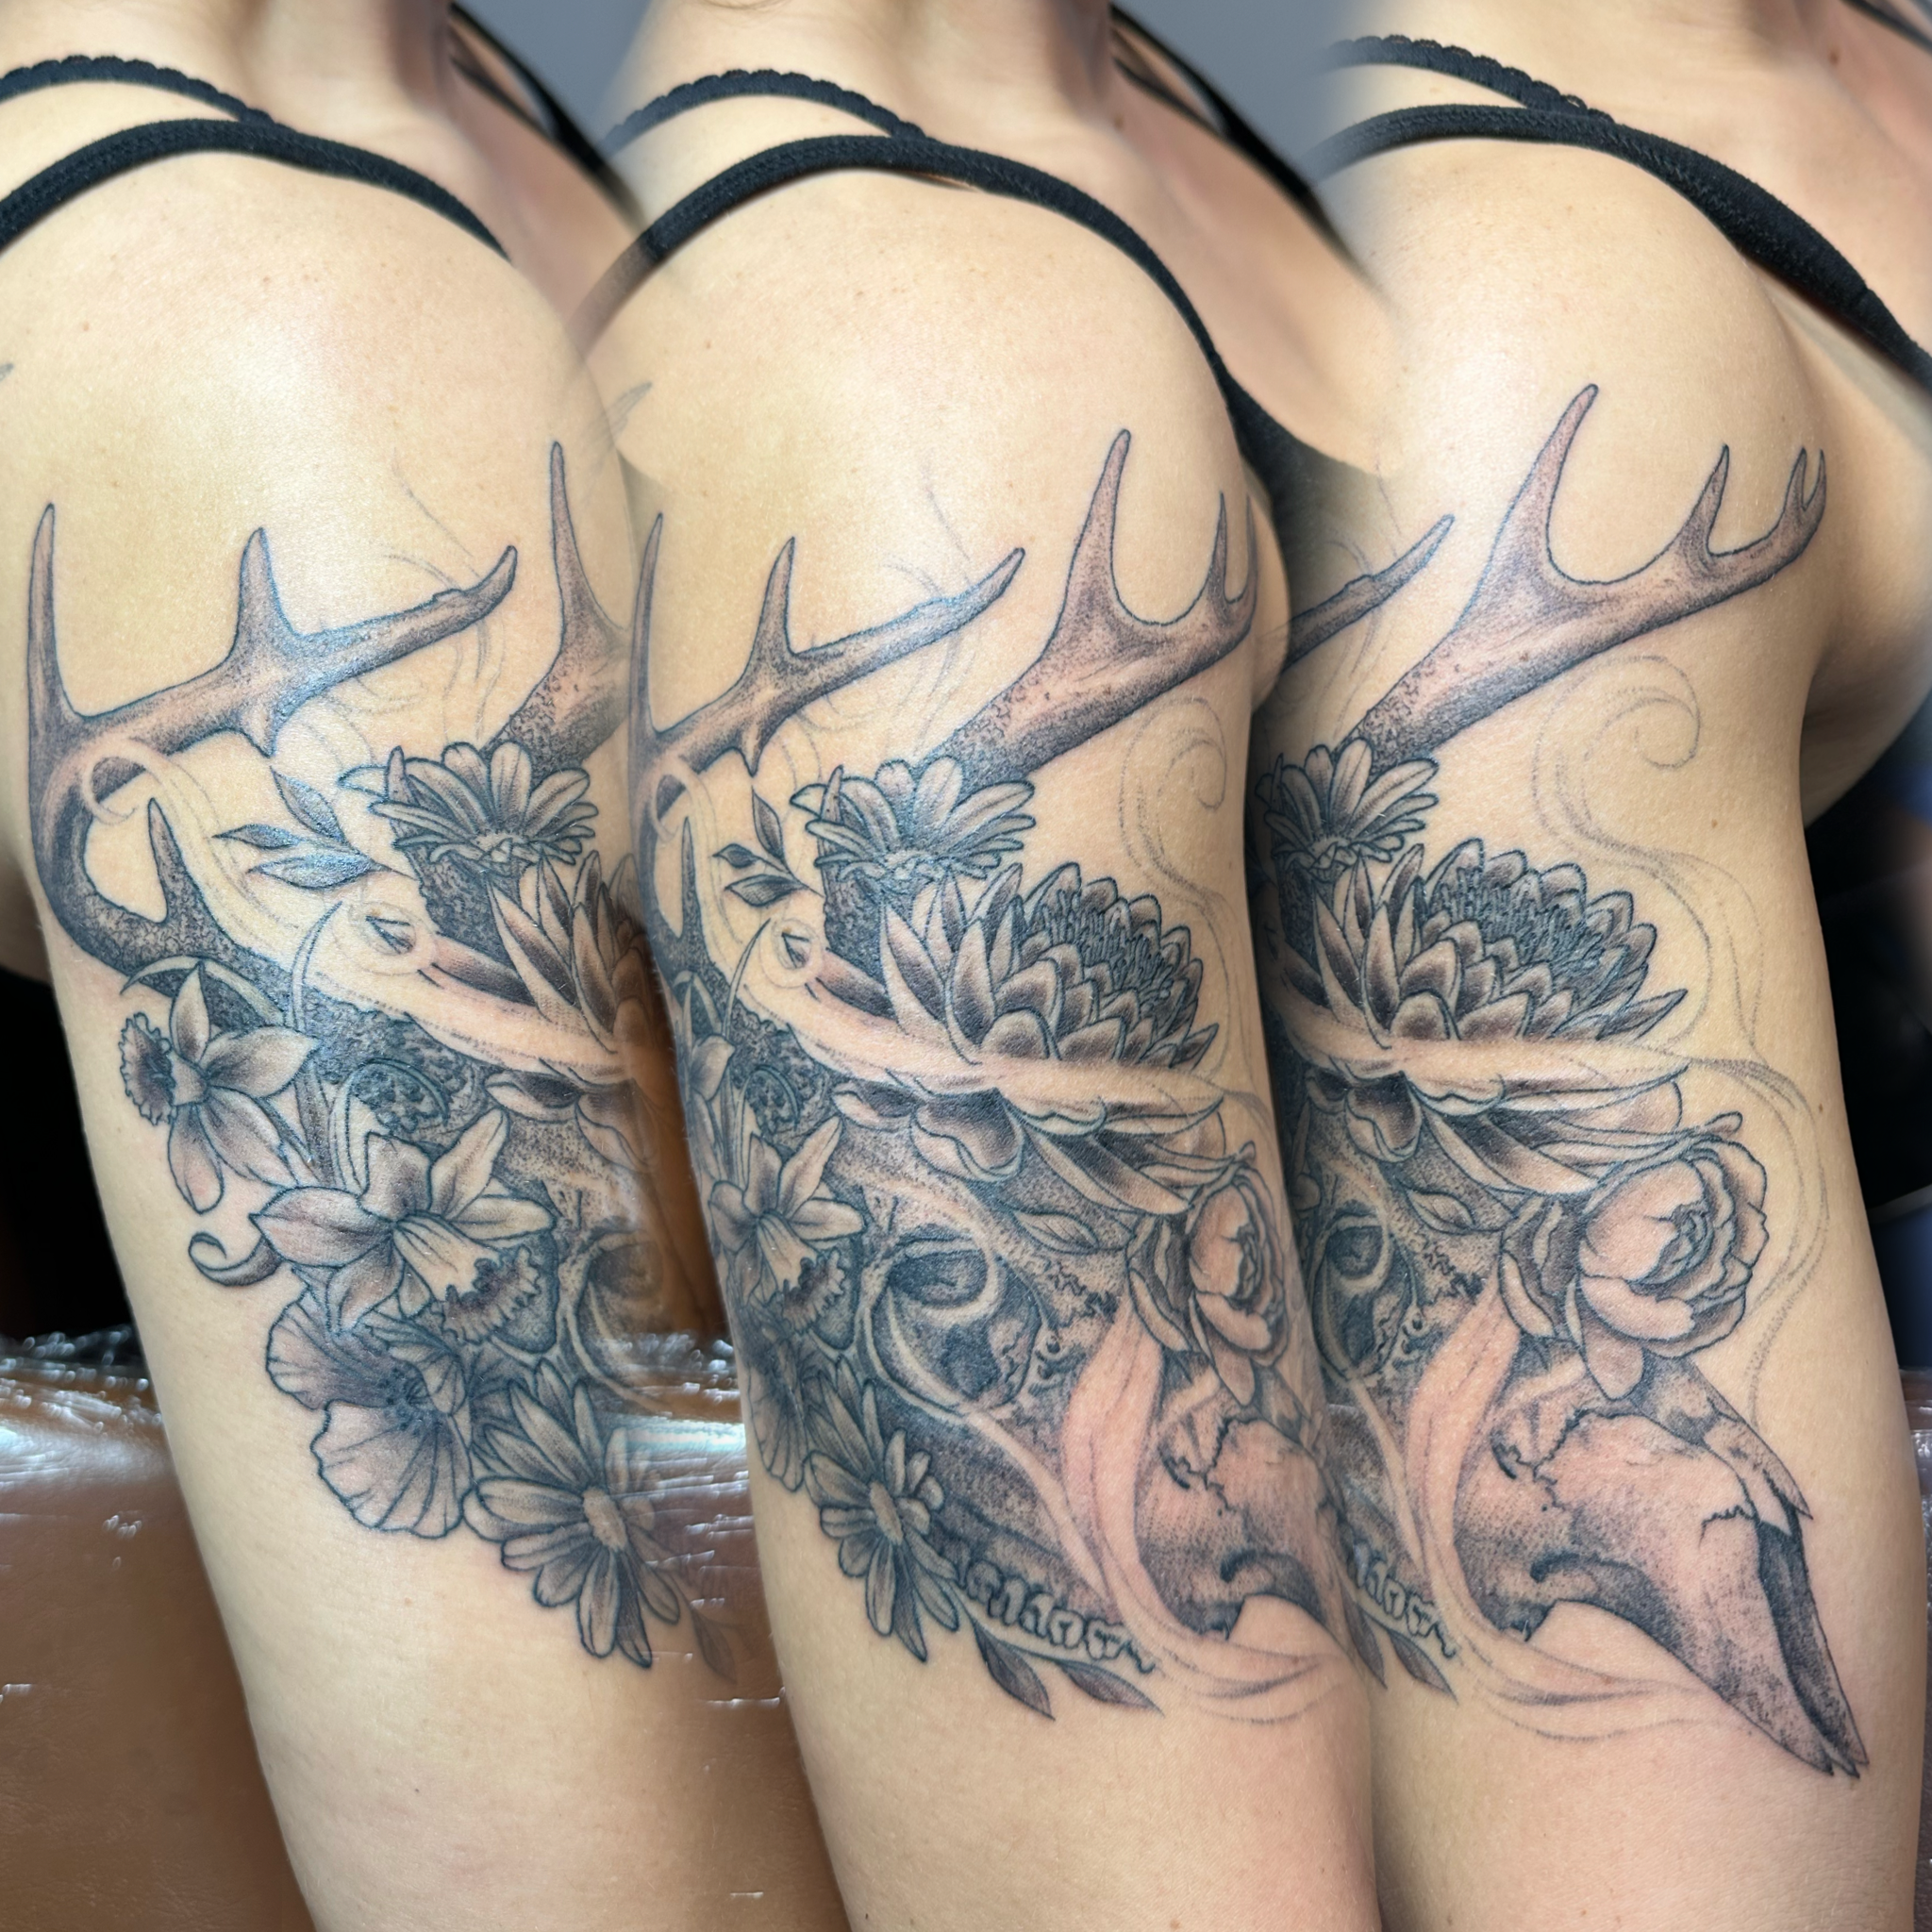 stinging ink | Hand tattoos, Ink tattoo, Tattoos